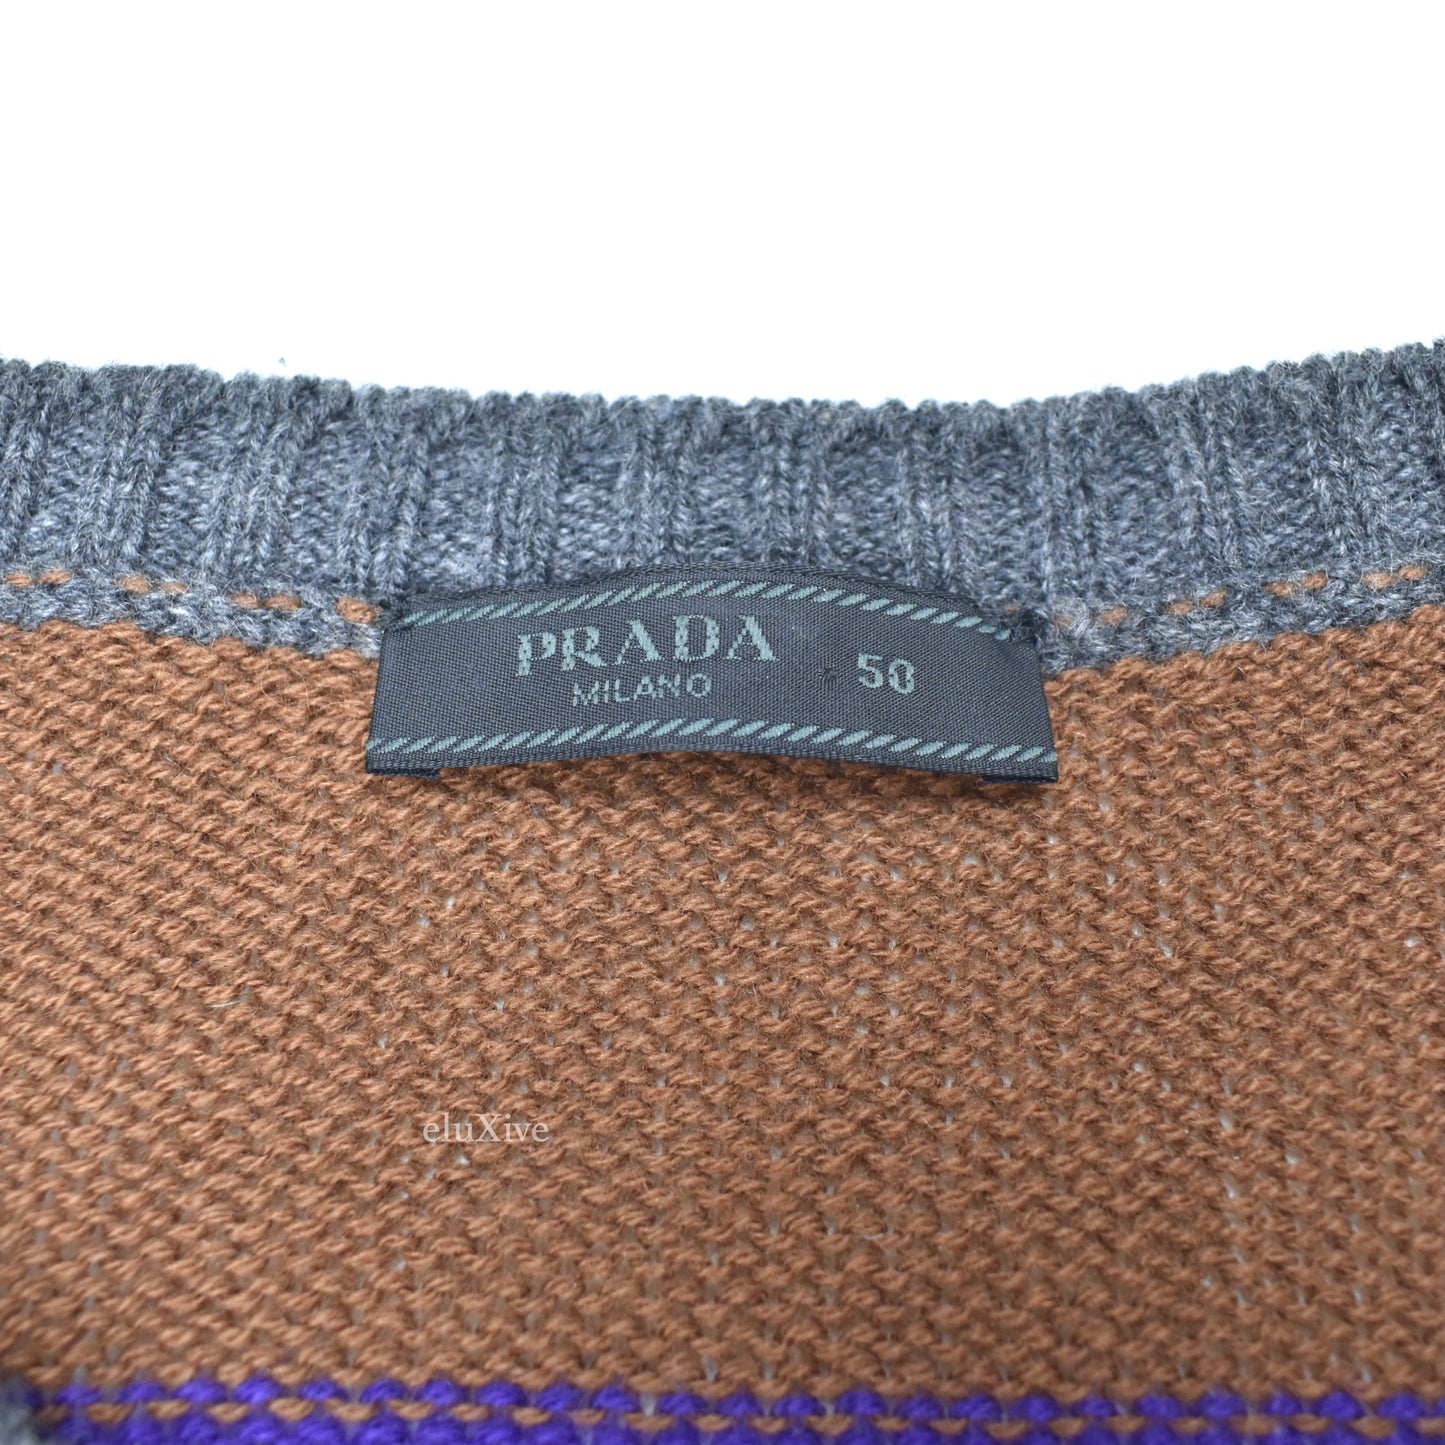 Prada - Colorful Striped Wool Crewneck Sweater